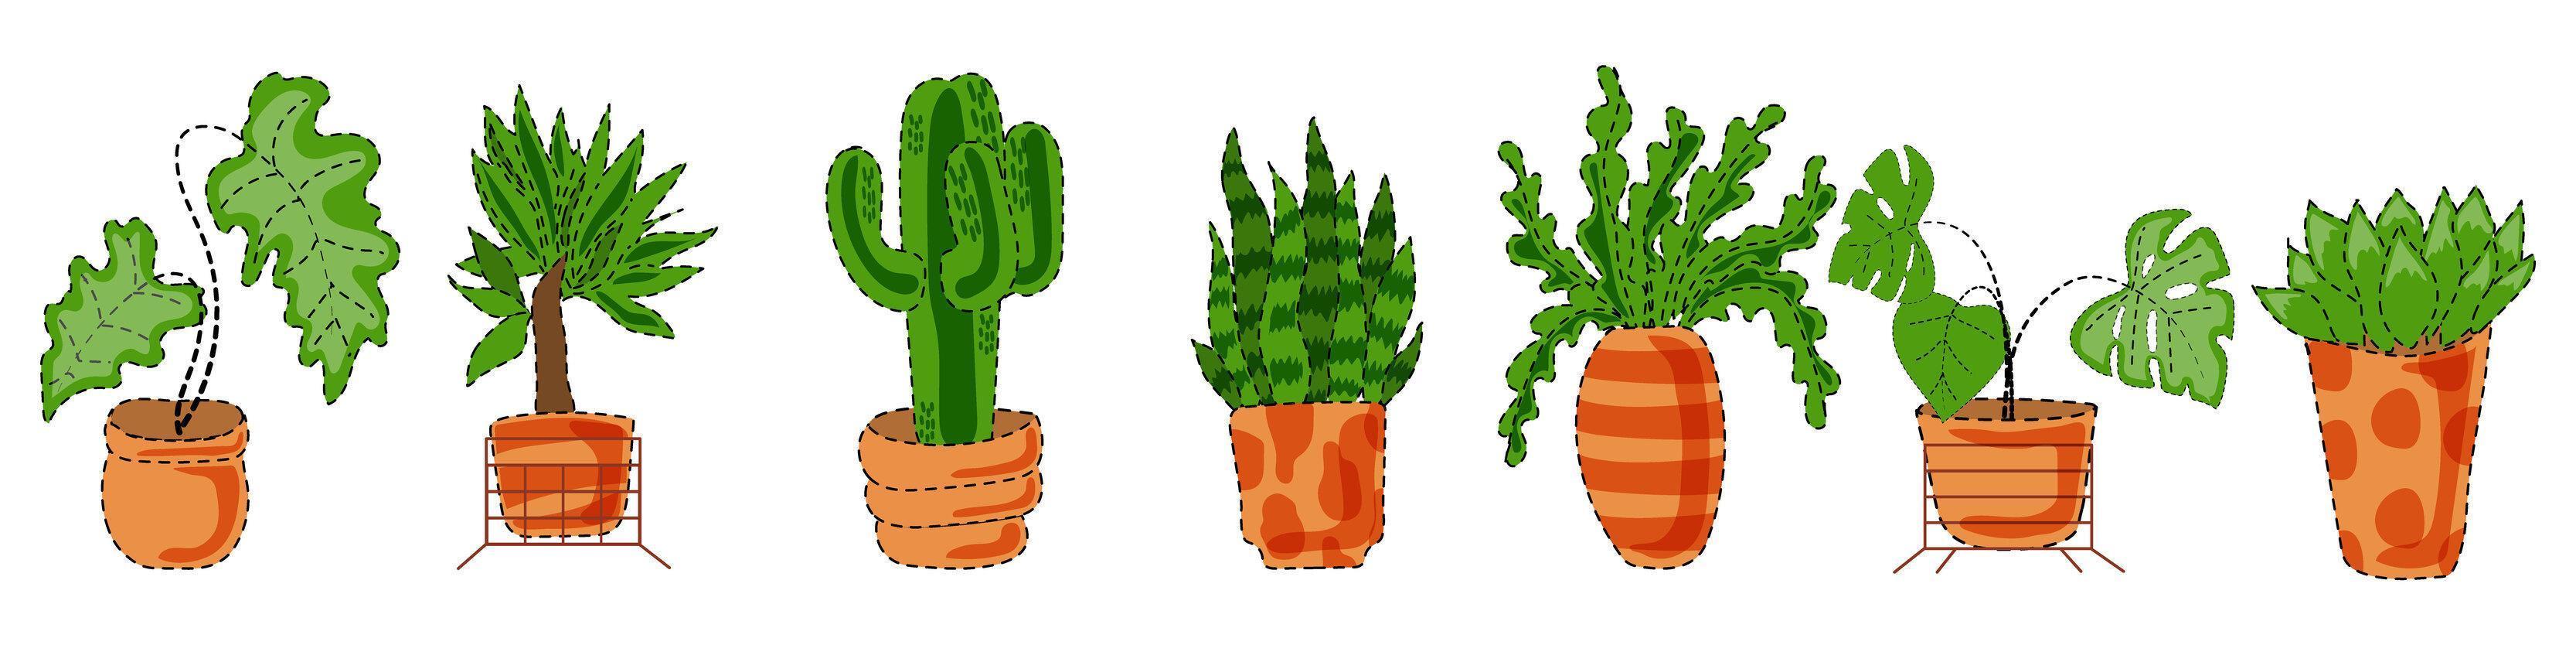 un ensemble de plantes d'intérieur dans divers pots. monstera exotique, dracaena, cactus et autres décorations d'espaces verts. vecteur